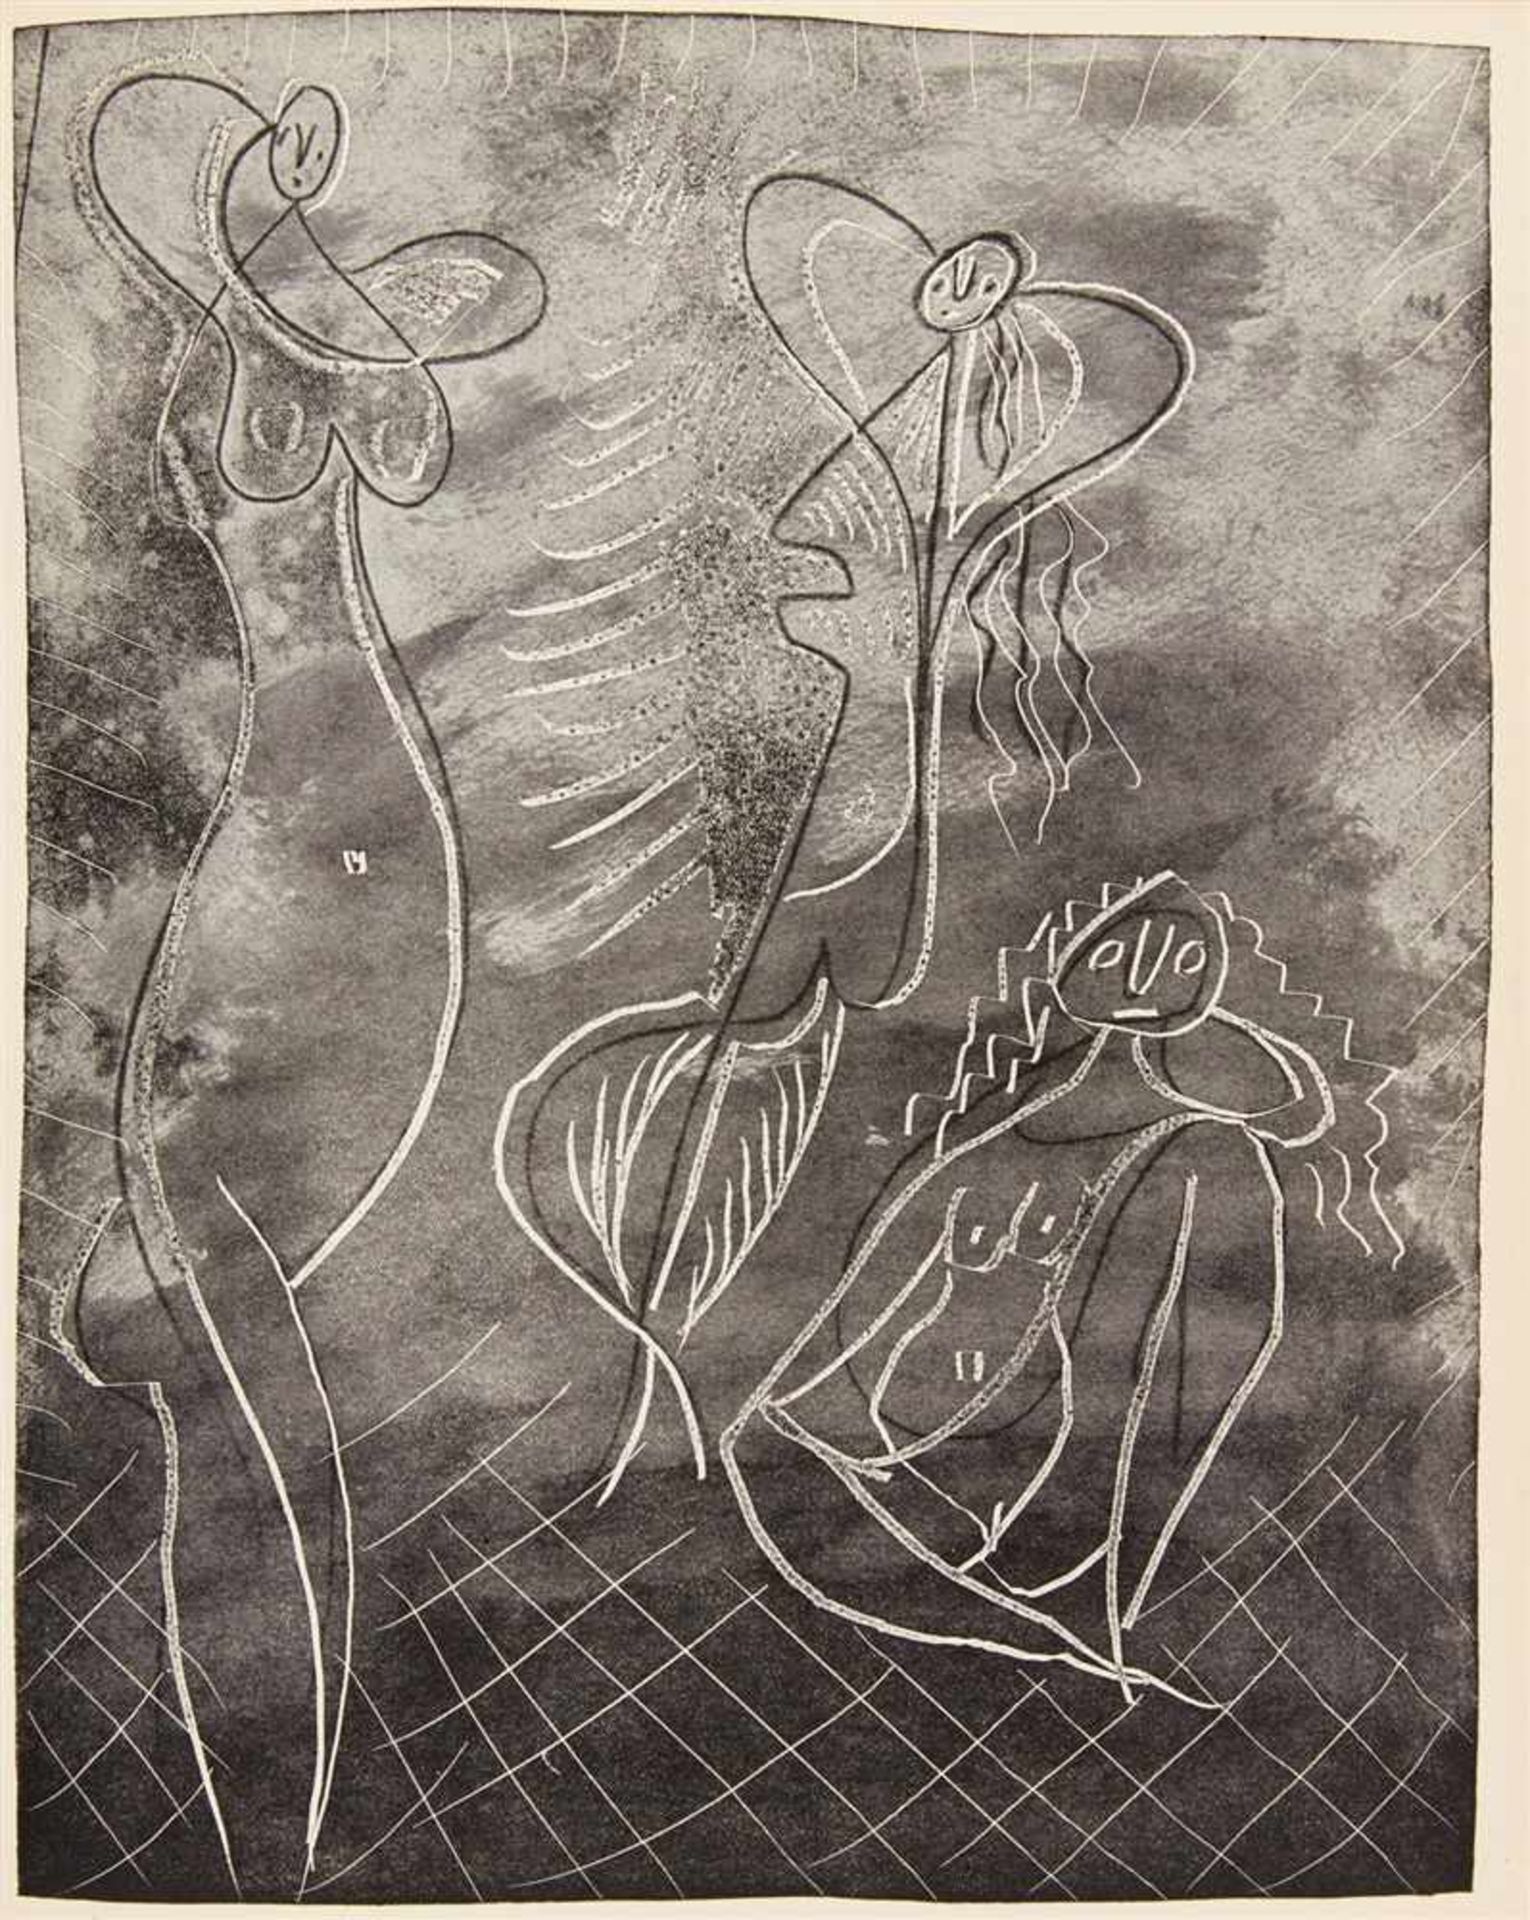 PICASSO, PABLOGEORGES HUGNET: La Chèvre-Feuille. Paris: R.-J. Godet 1943. 28 x 22 cm. Mit sechs